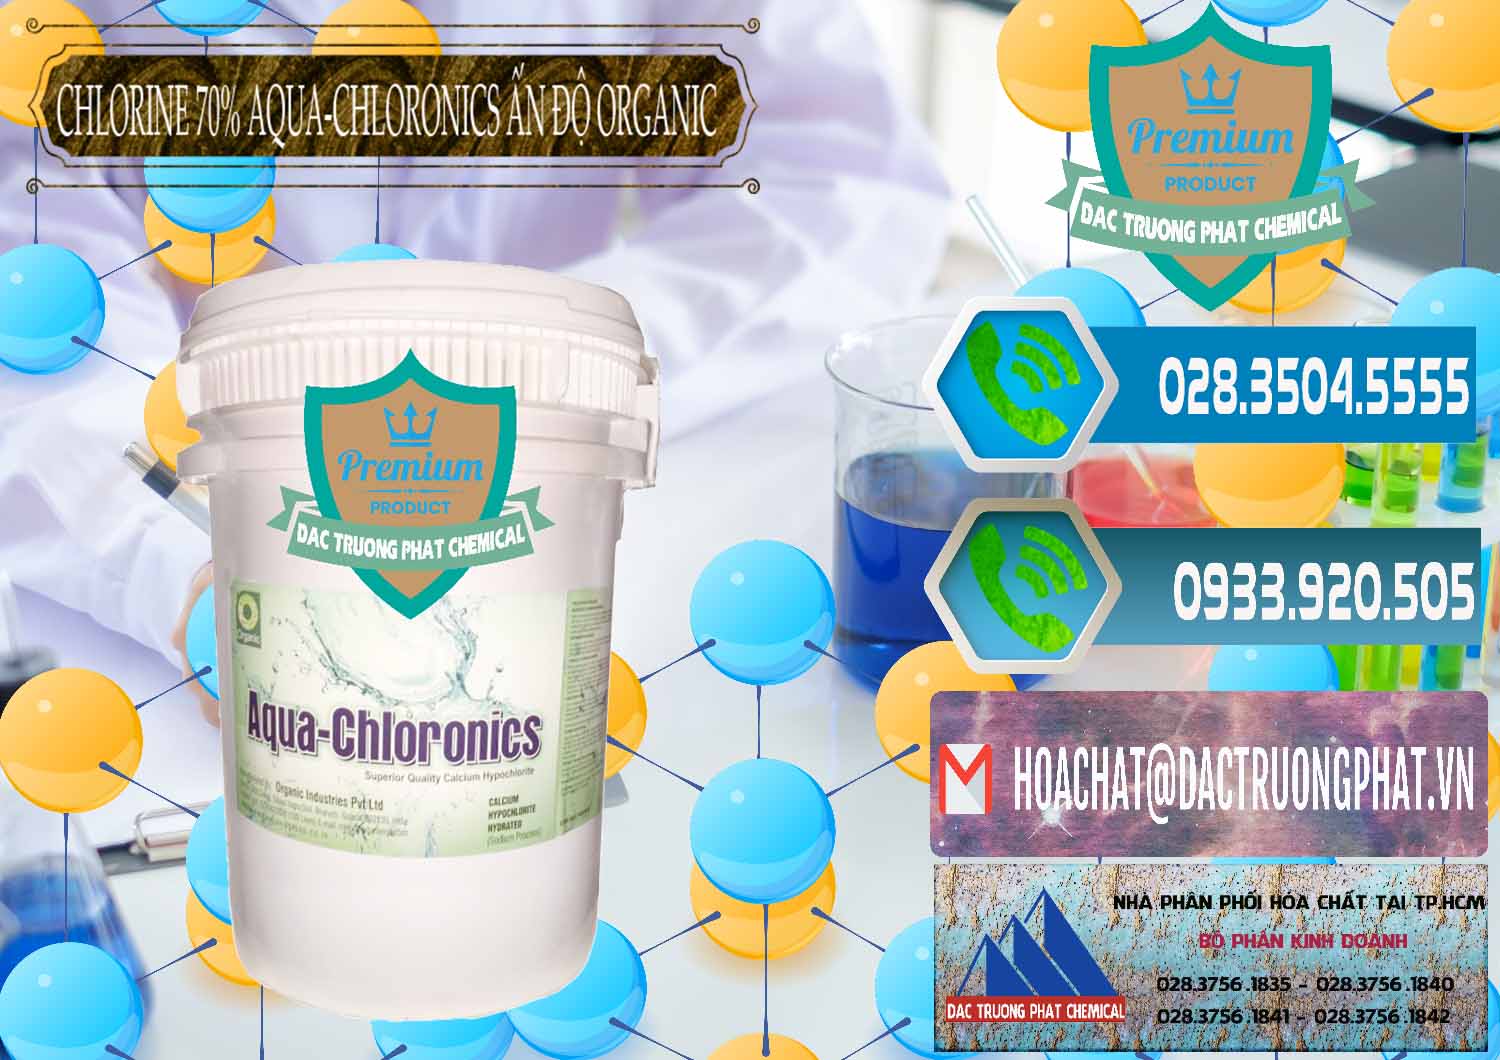 Công ty chuyên bán - cung ứng Chlorine – Clorin 70% Aqua-Chloronics Ấn Độ Organic India - 0211 - Công ty cung cấp _ phân phối hóa chất tại TP.HCM - congtyhoachat.net